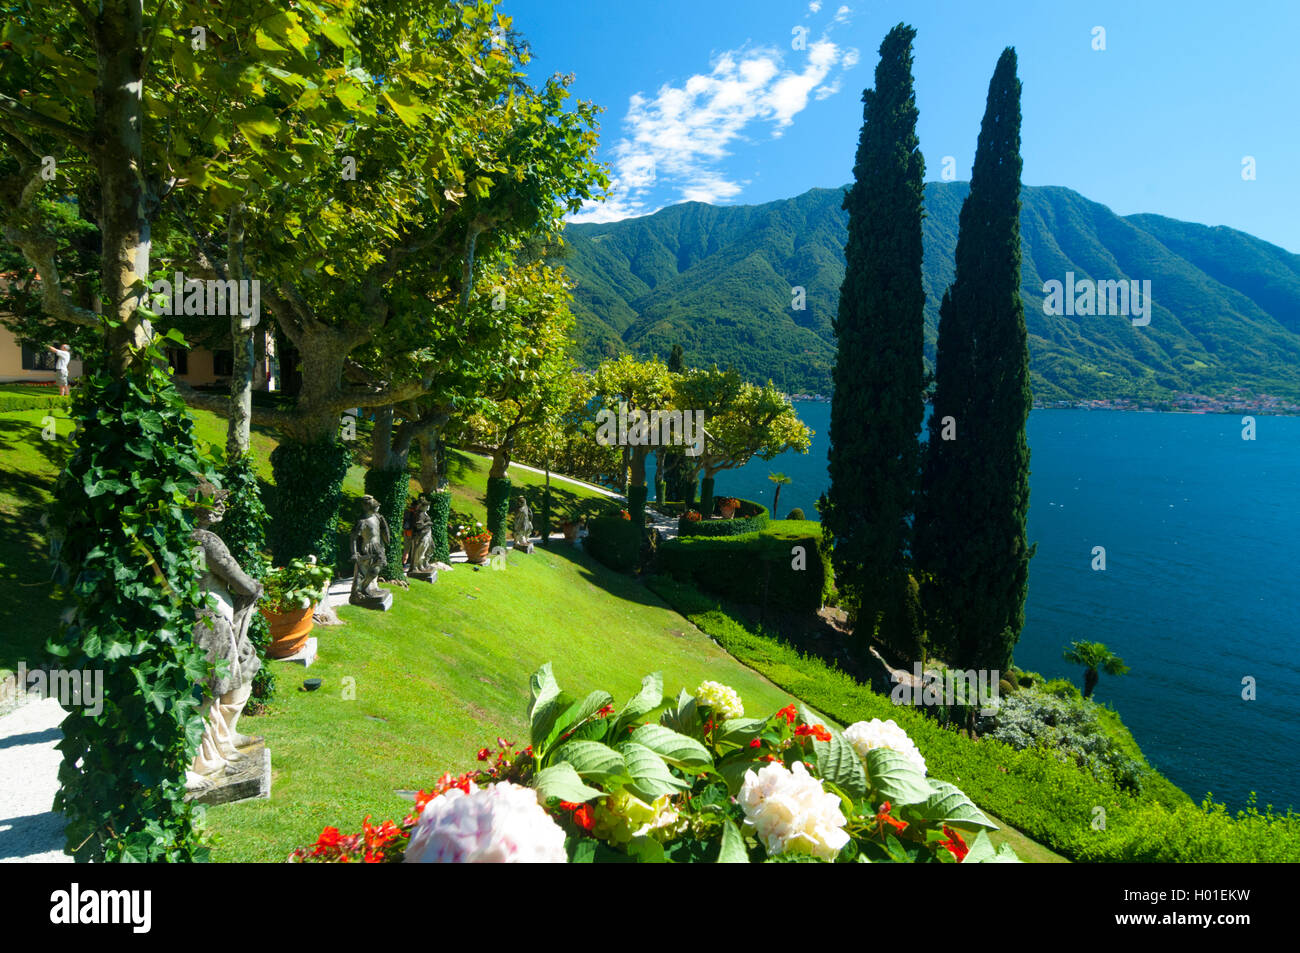 Italy, Lombardy, Como lake, Lenno, Balbianello villa, garden during spring Stock Photo